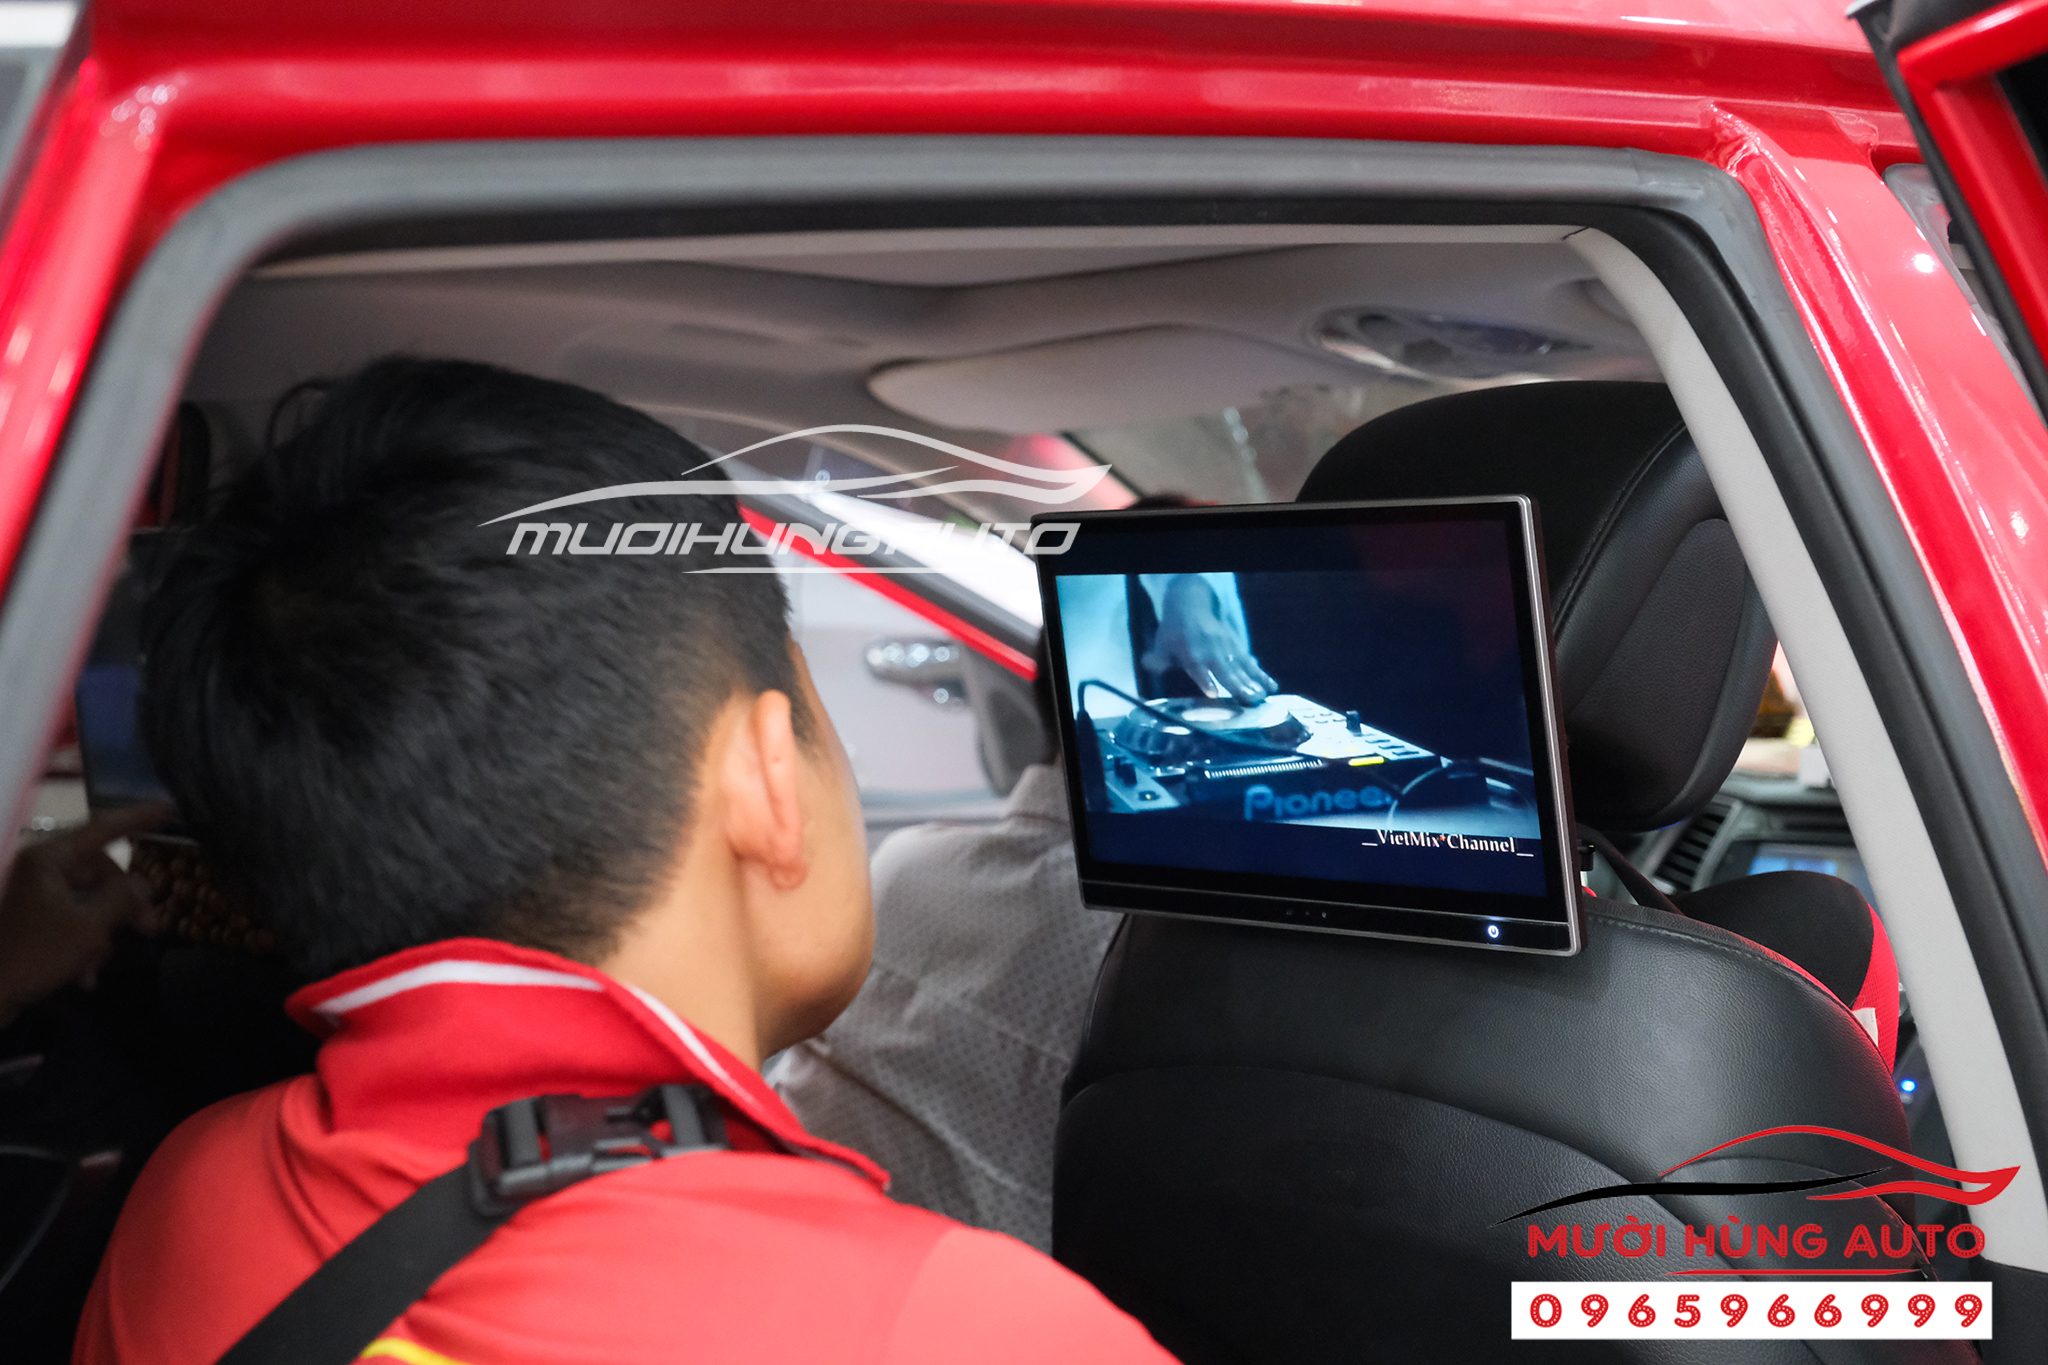 lắp đặt màn hình gối đầu gắn xe Hyundai Santafe 2017 